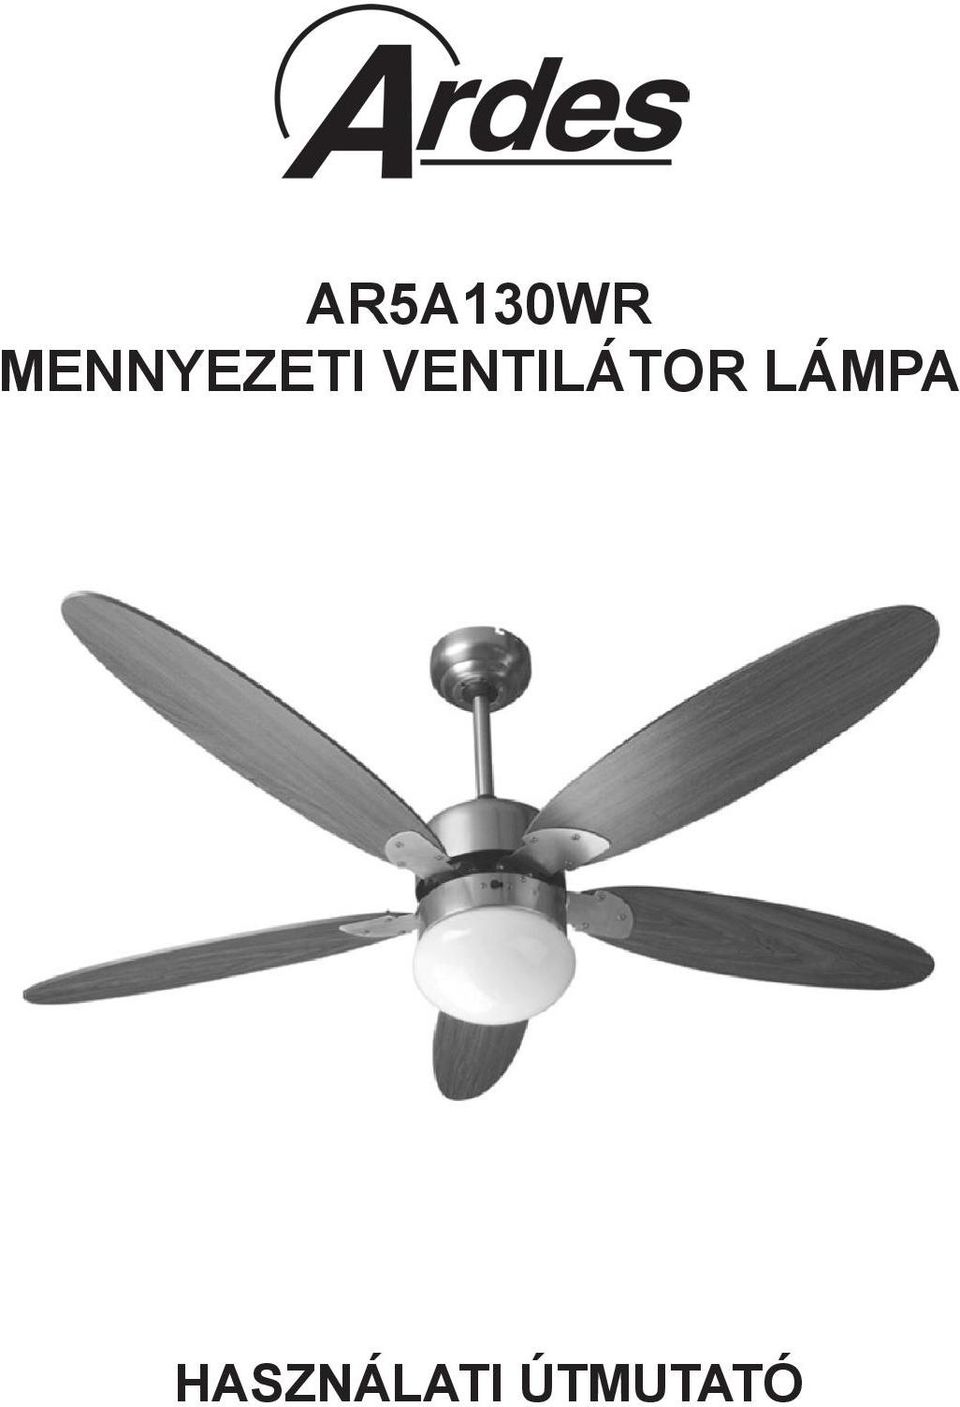 Mennyezeti ventilátor lámpa bekötése - Autoblog Hungarian